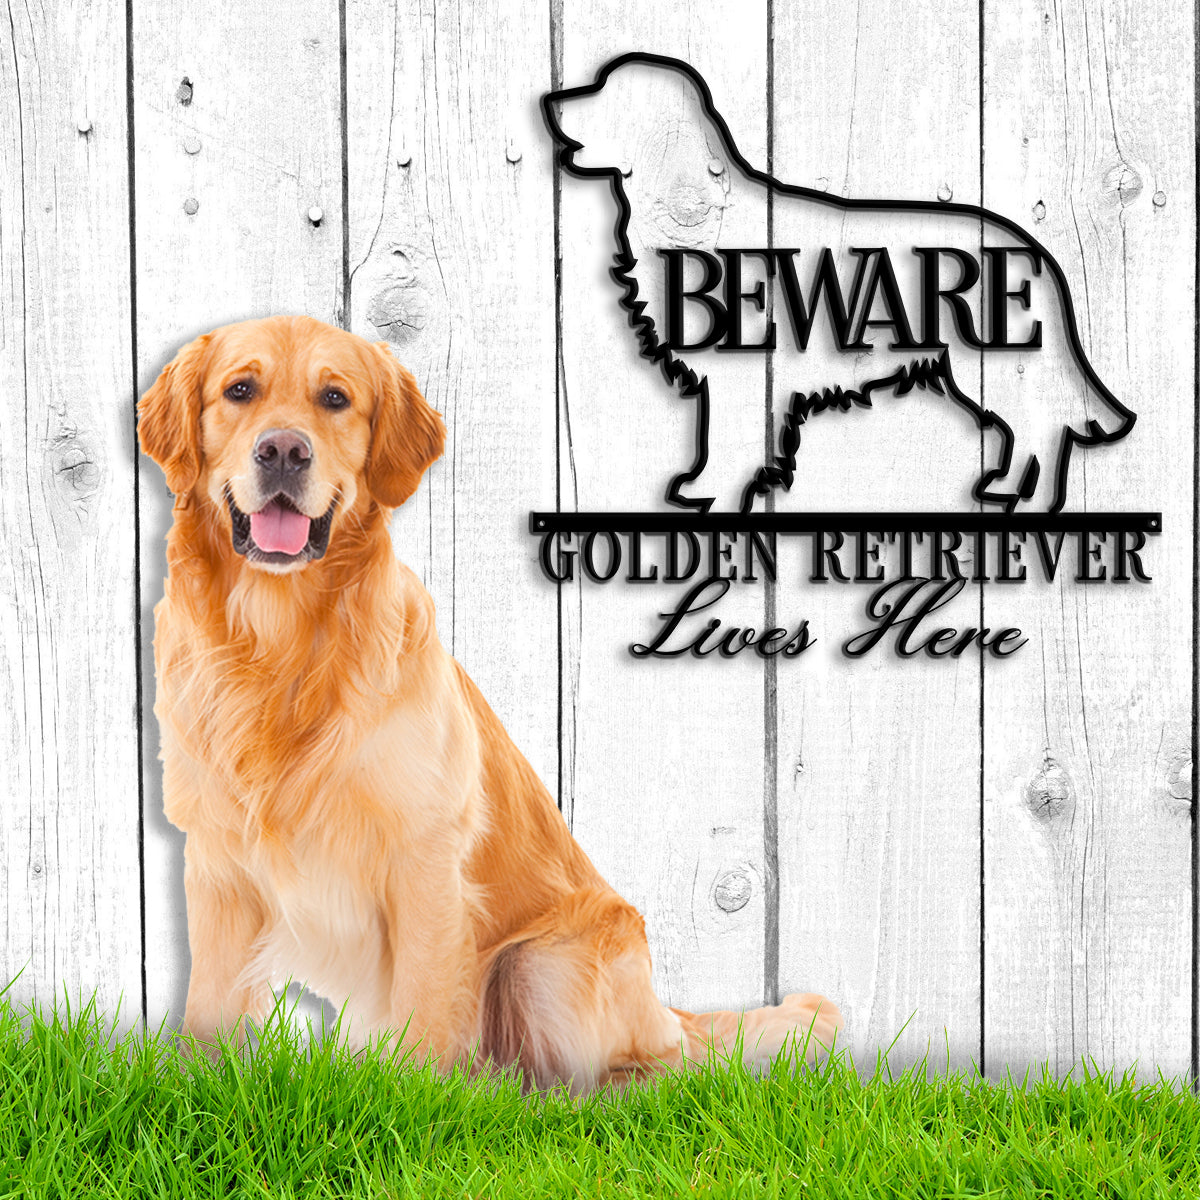 Golden Retriever Metal Wall Art Dog Metal Sign Personalized Golden Retriever Metal Sign Golden Retriever Gift Golden Retriever Lover Gift